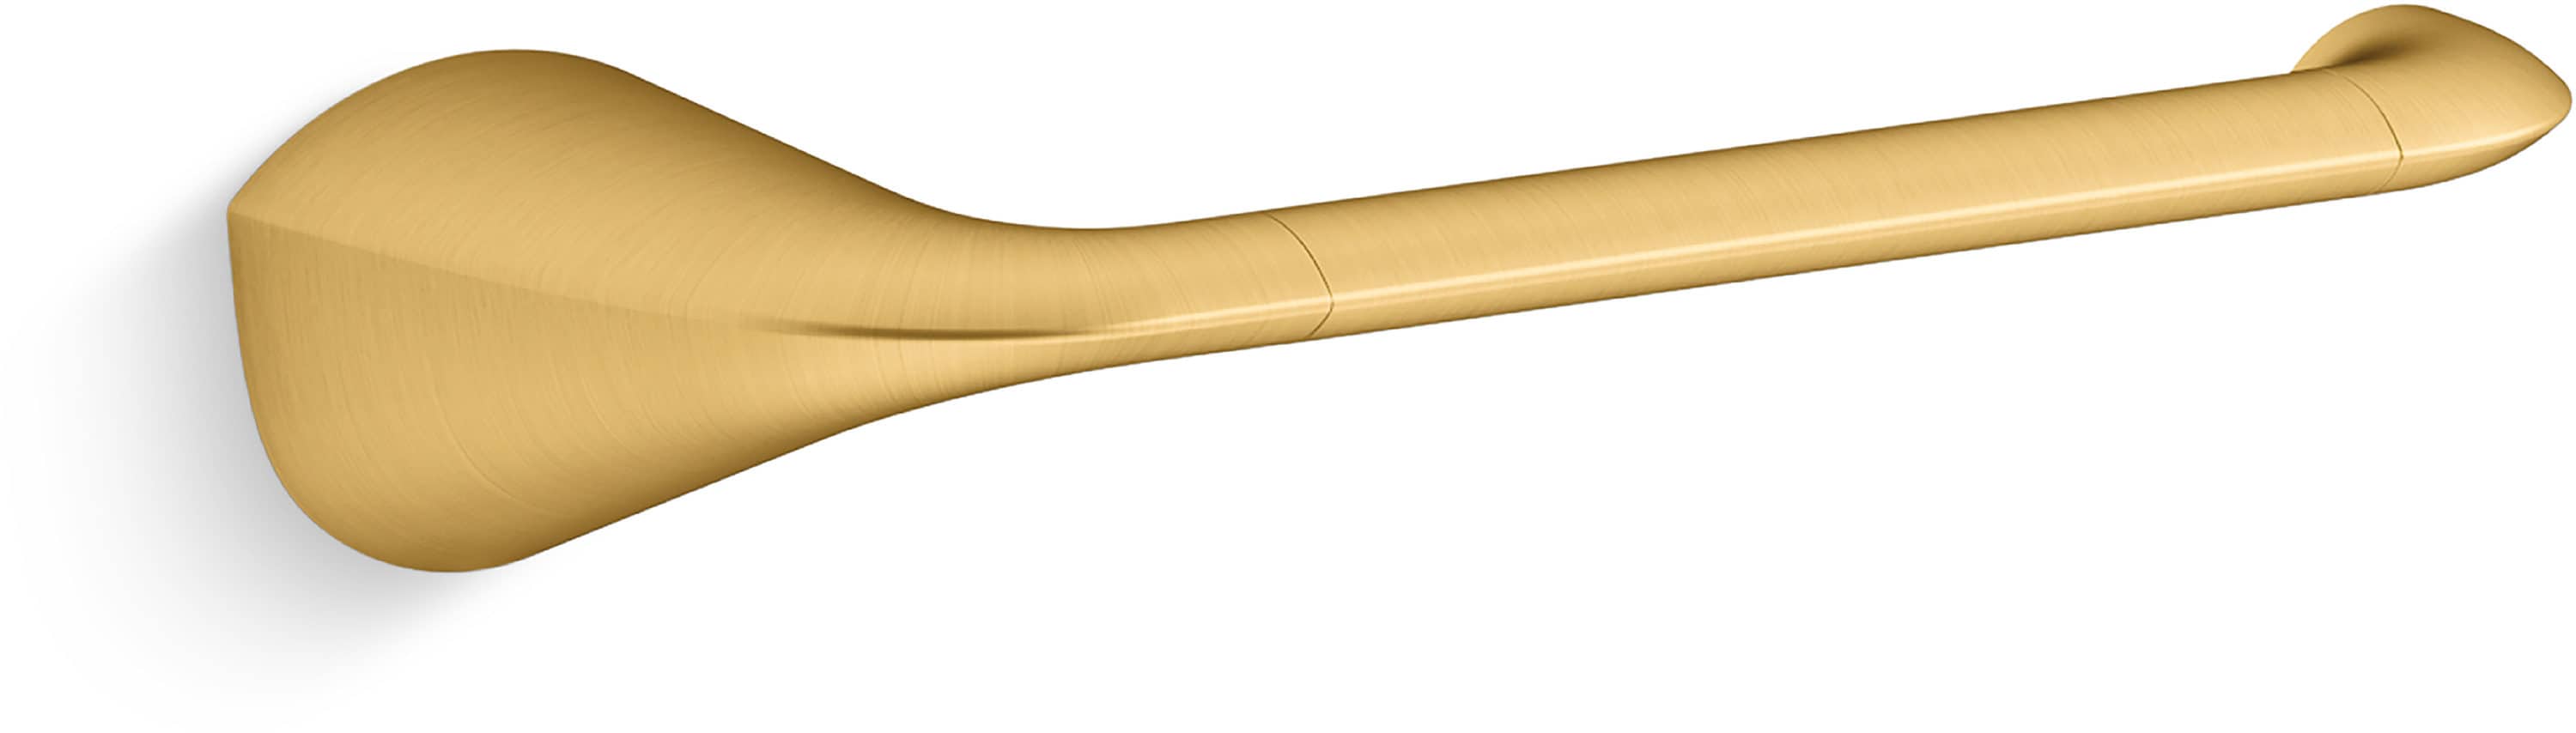 Modern Brass Bar Paper Holder